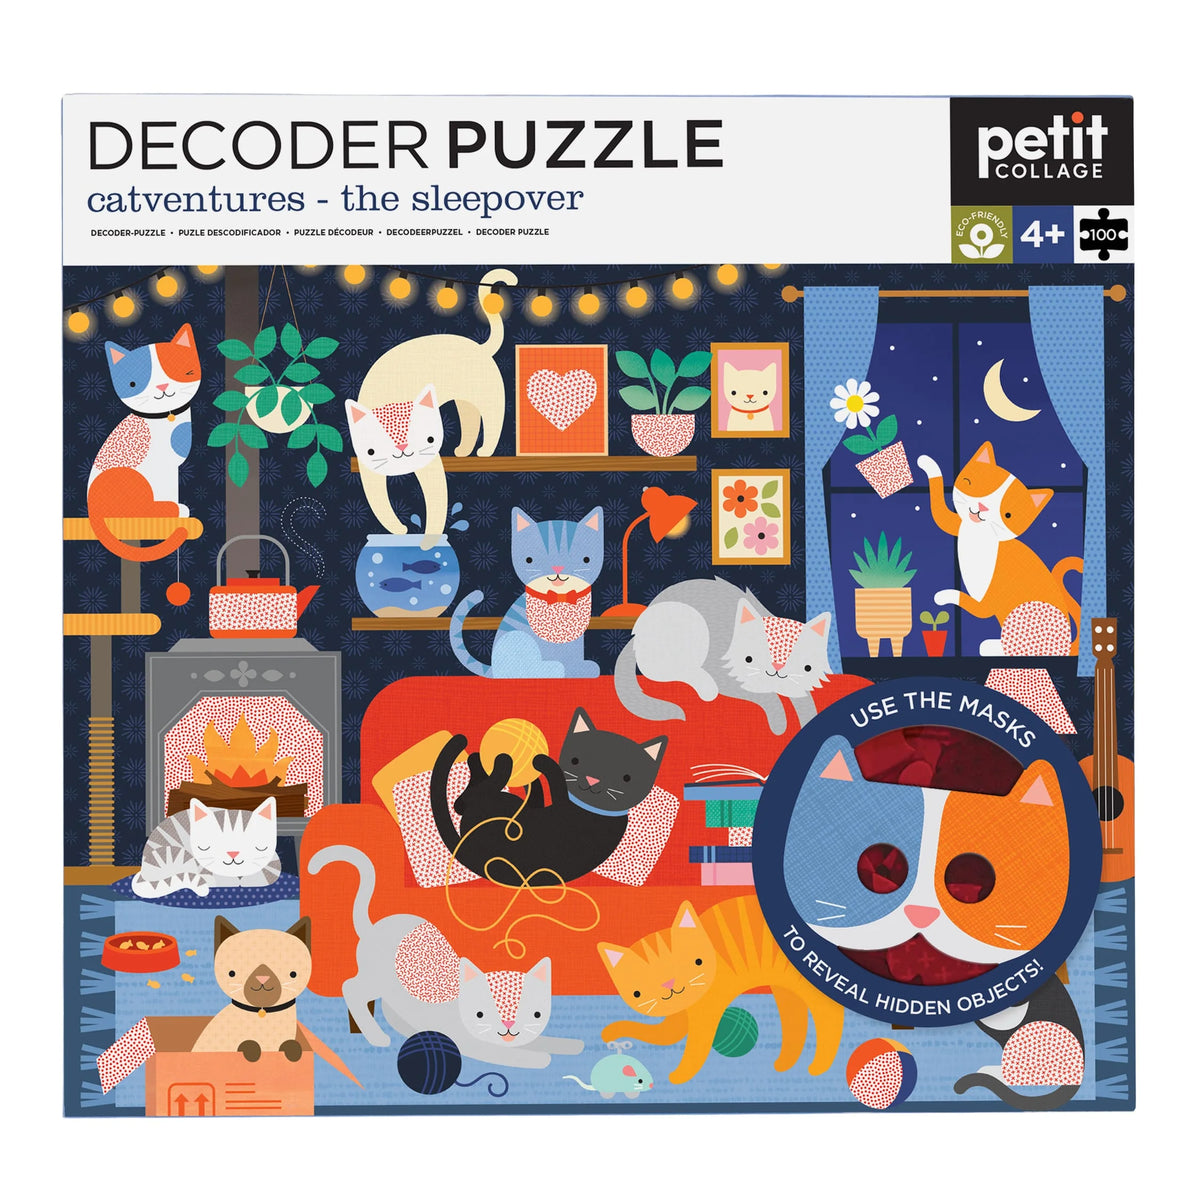 100 Piece Decoder Puzzle - Catventures: the sleepover